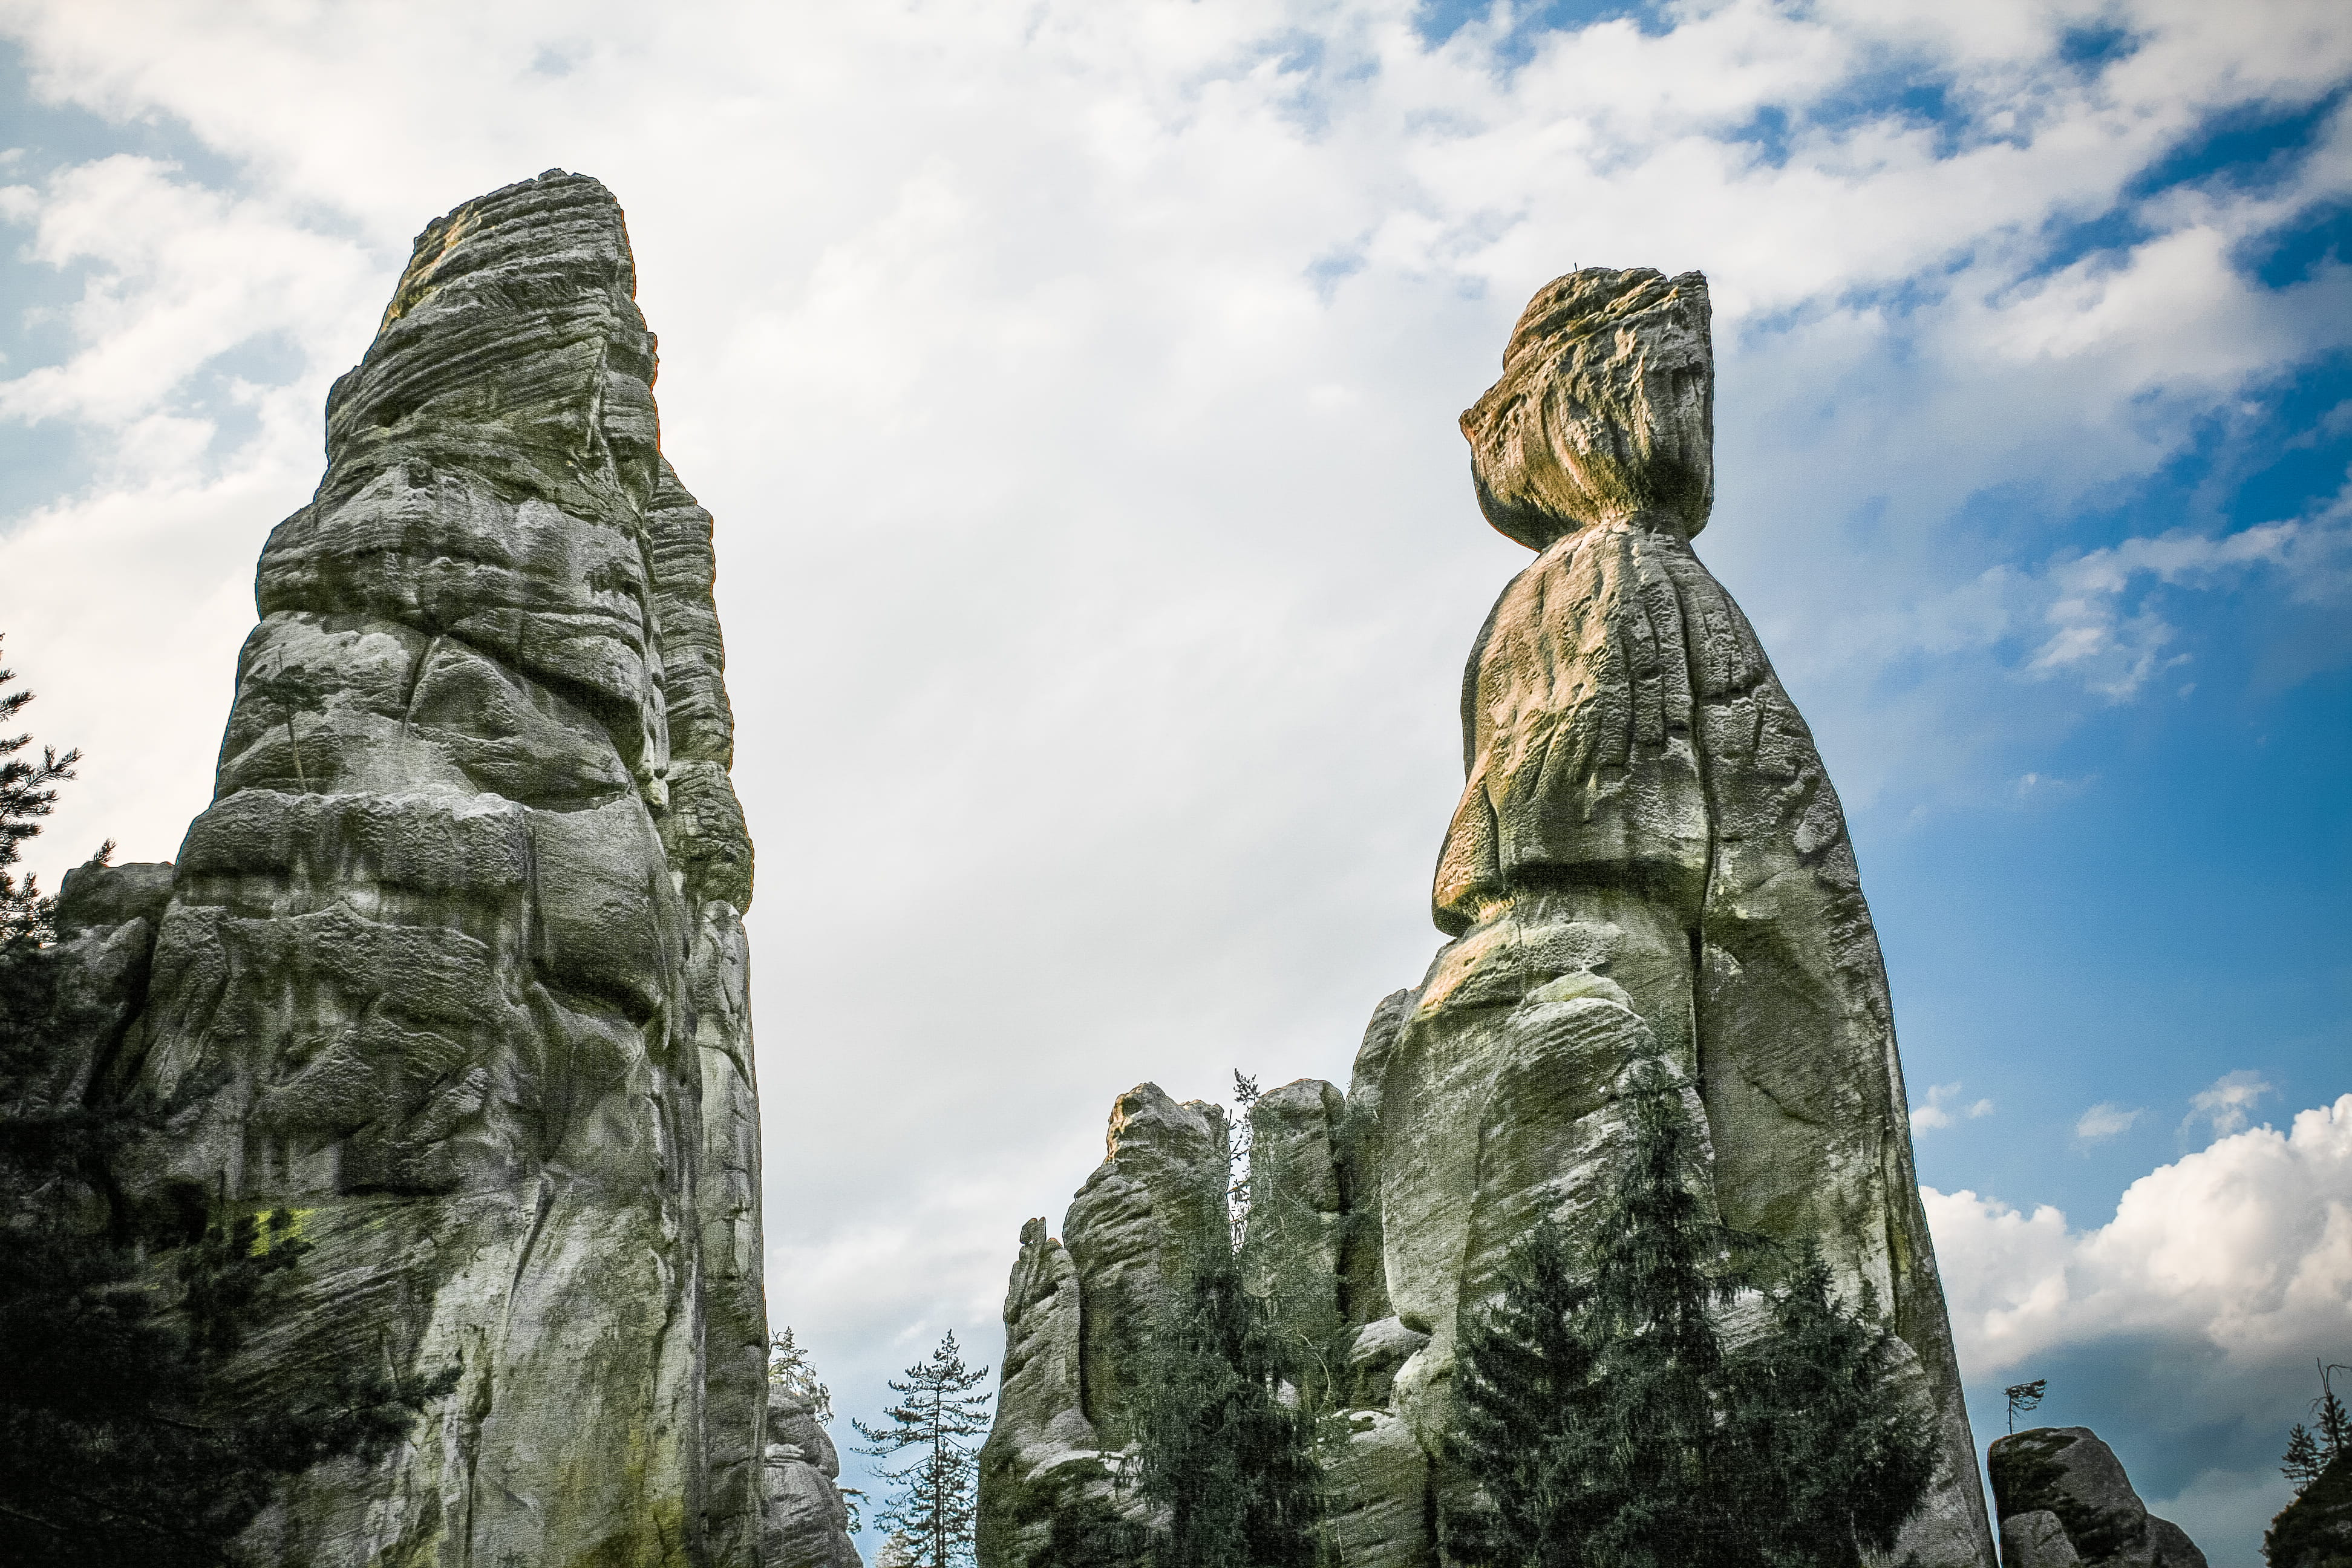 Adrspach-Teplice Rocks in Czech Republic, clouds, nature, buddhism